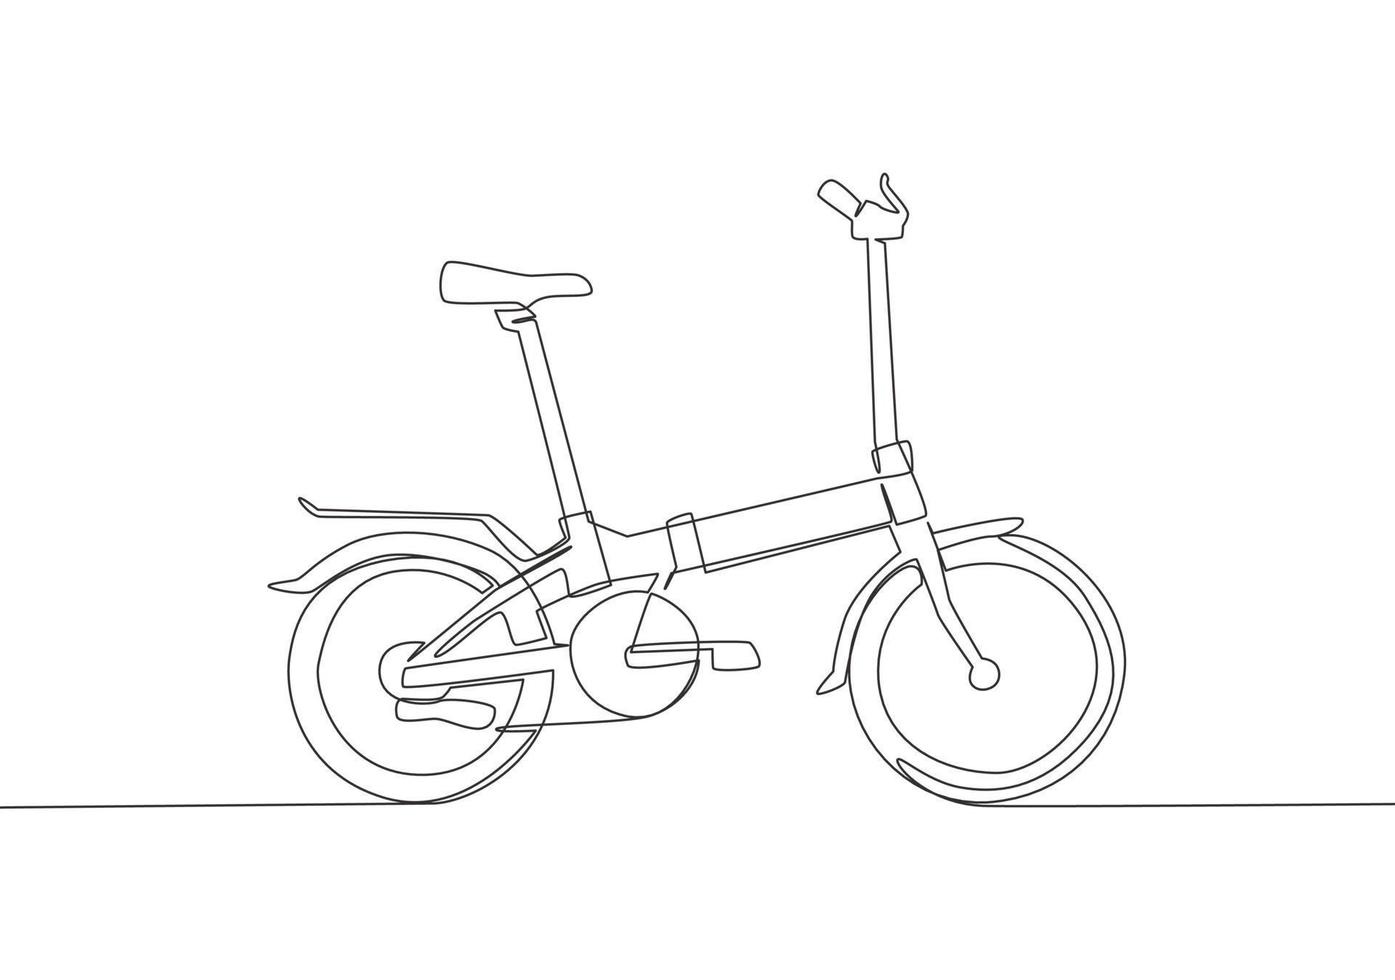 soltero continuo línea dibujo de plegable bicicleta logo. dos ciclo transporte concepto. uno línea dibujar diseño gráfico vector ilustración